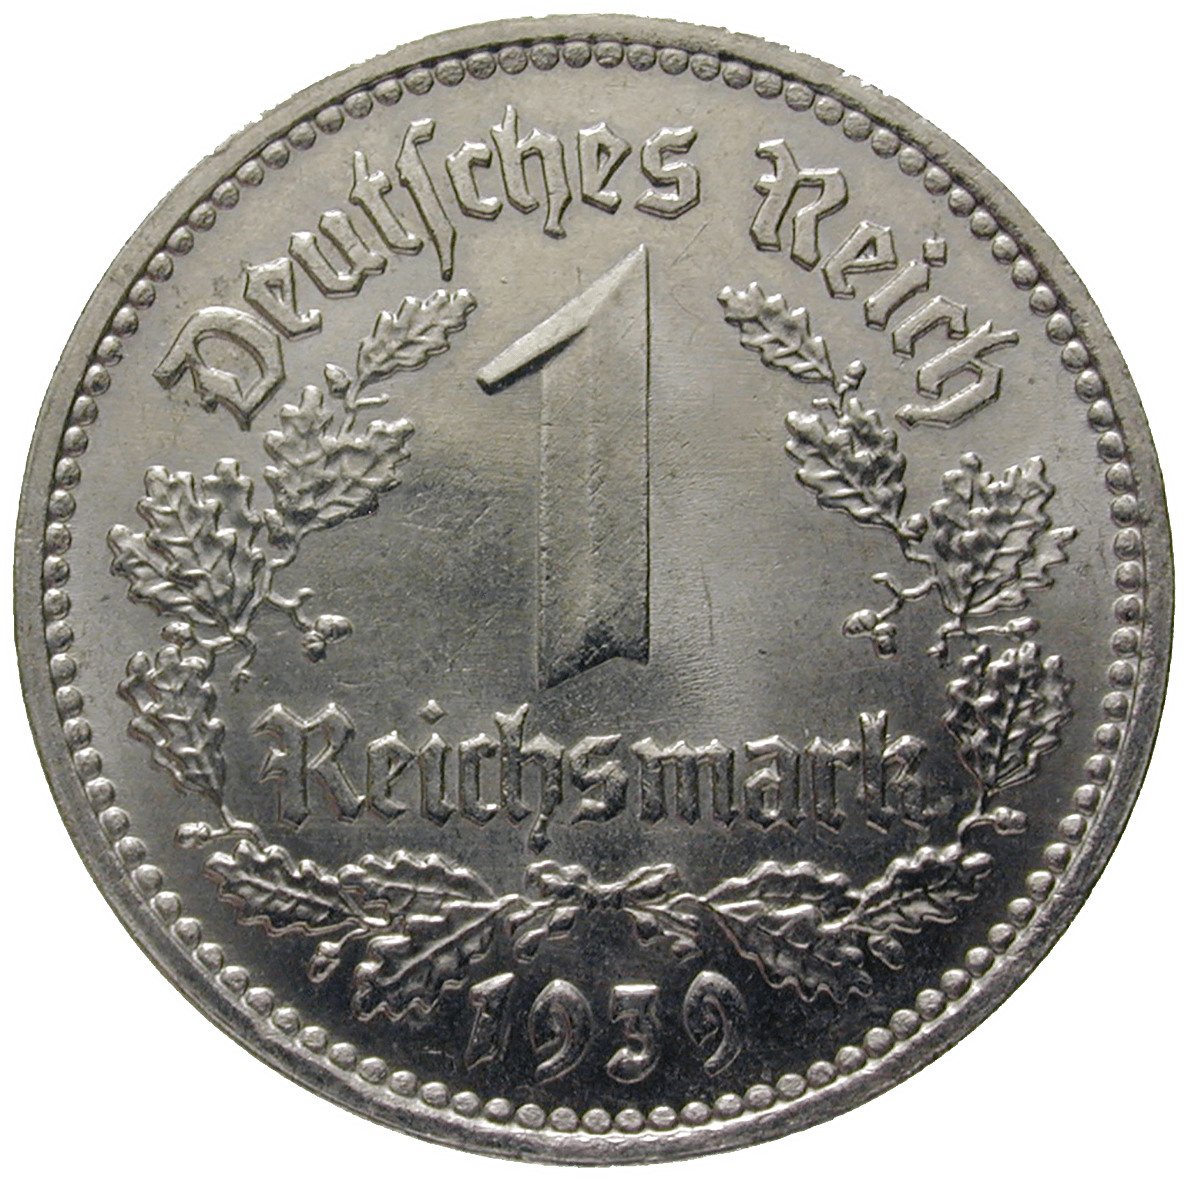 German Third Reich, 1 Reichsmark 1939 (obverse)